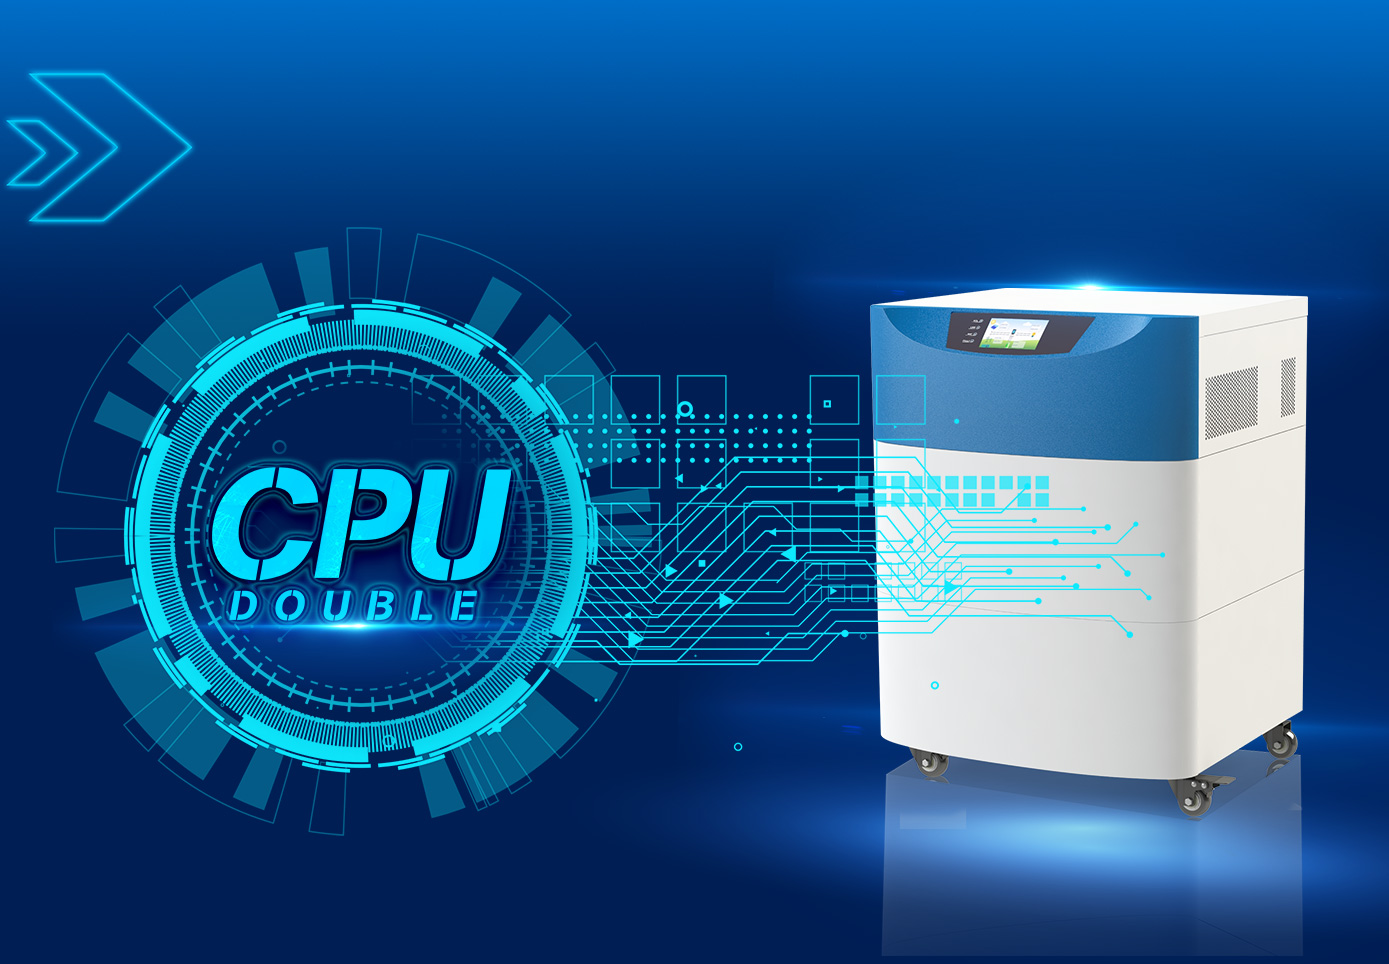 Double technologie de contrôle intelligent CPU, excellence de la performance.